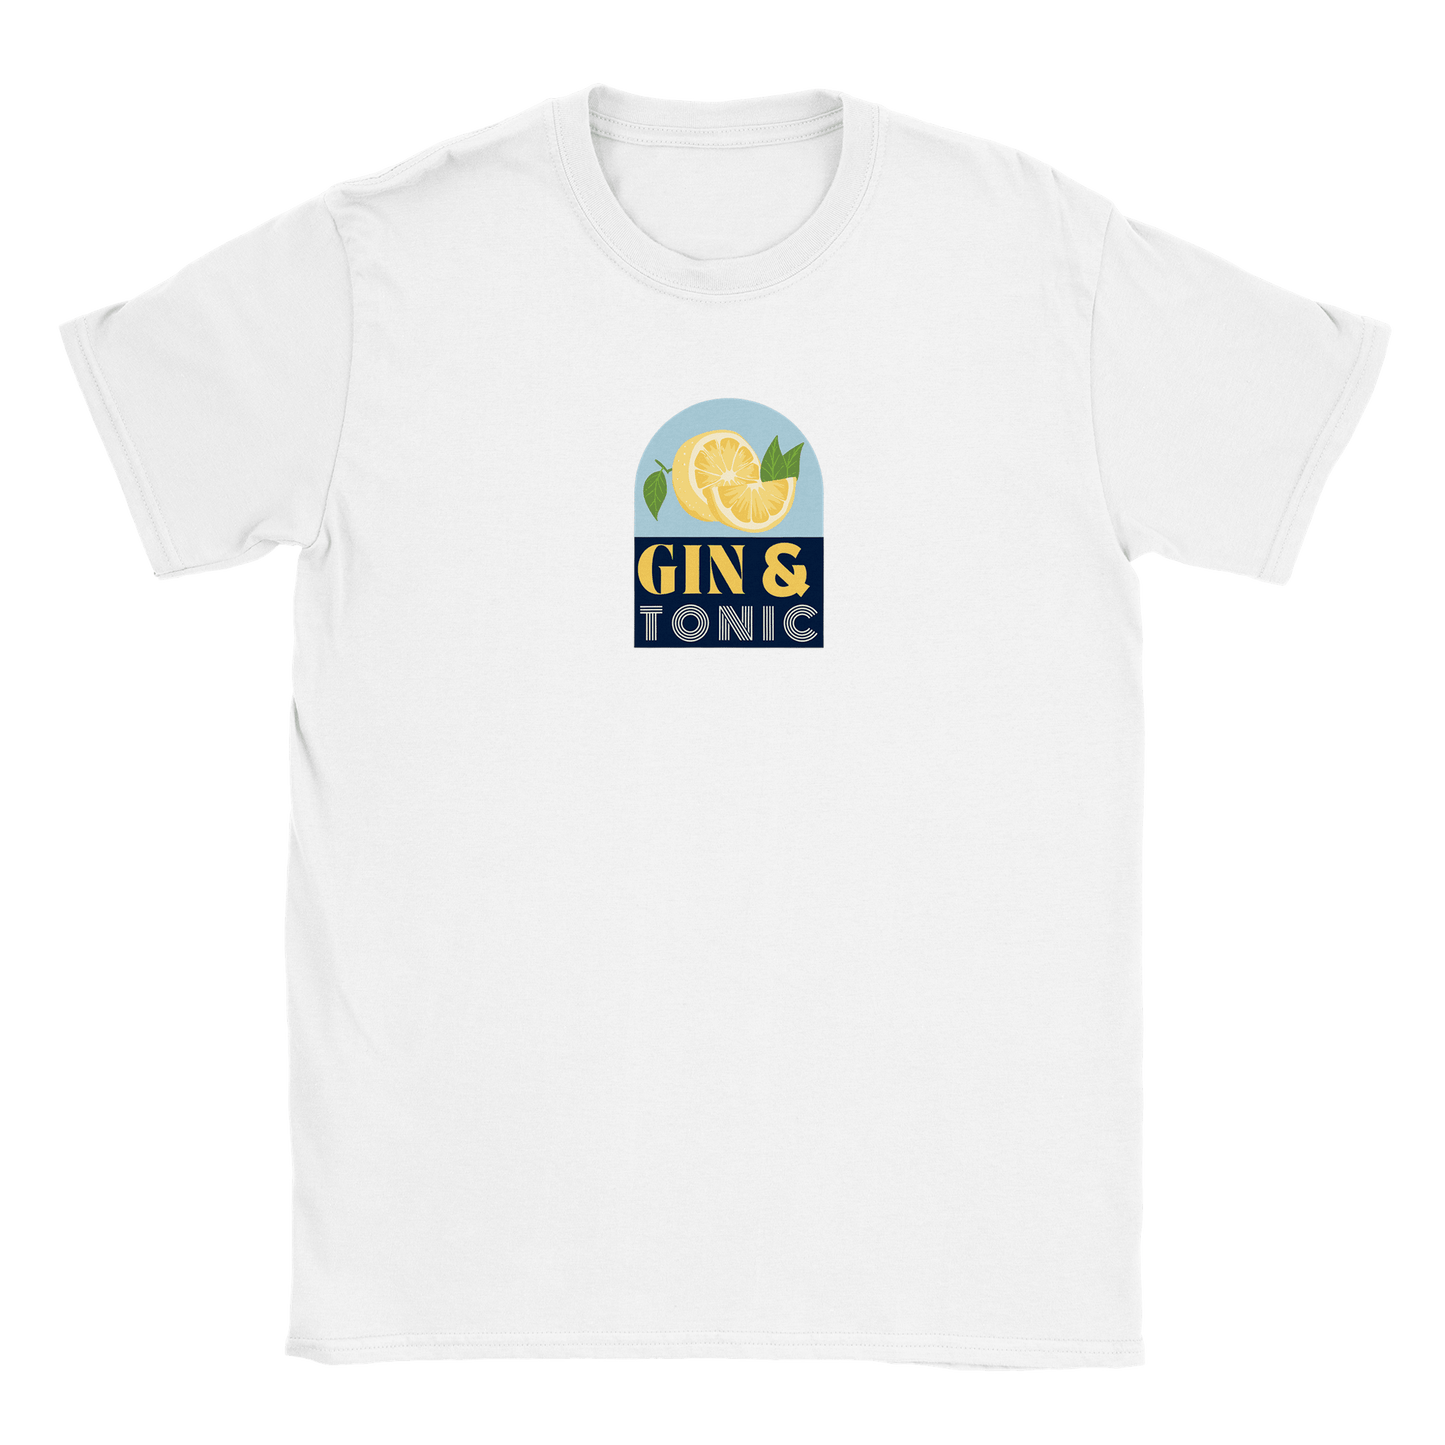 Gin & Tonic - T-shirt Vit